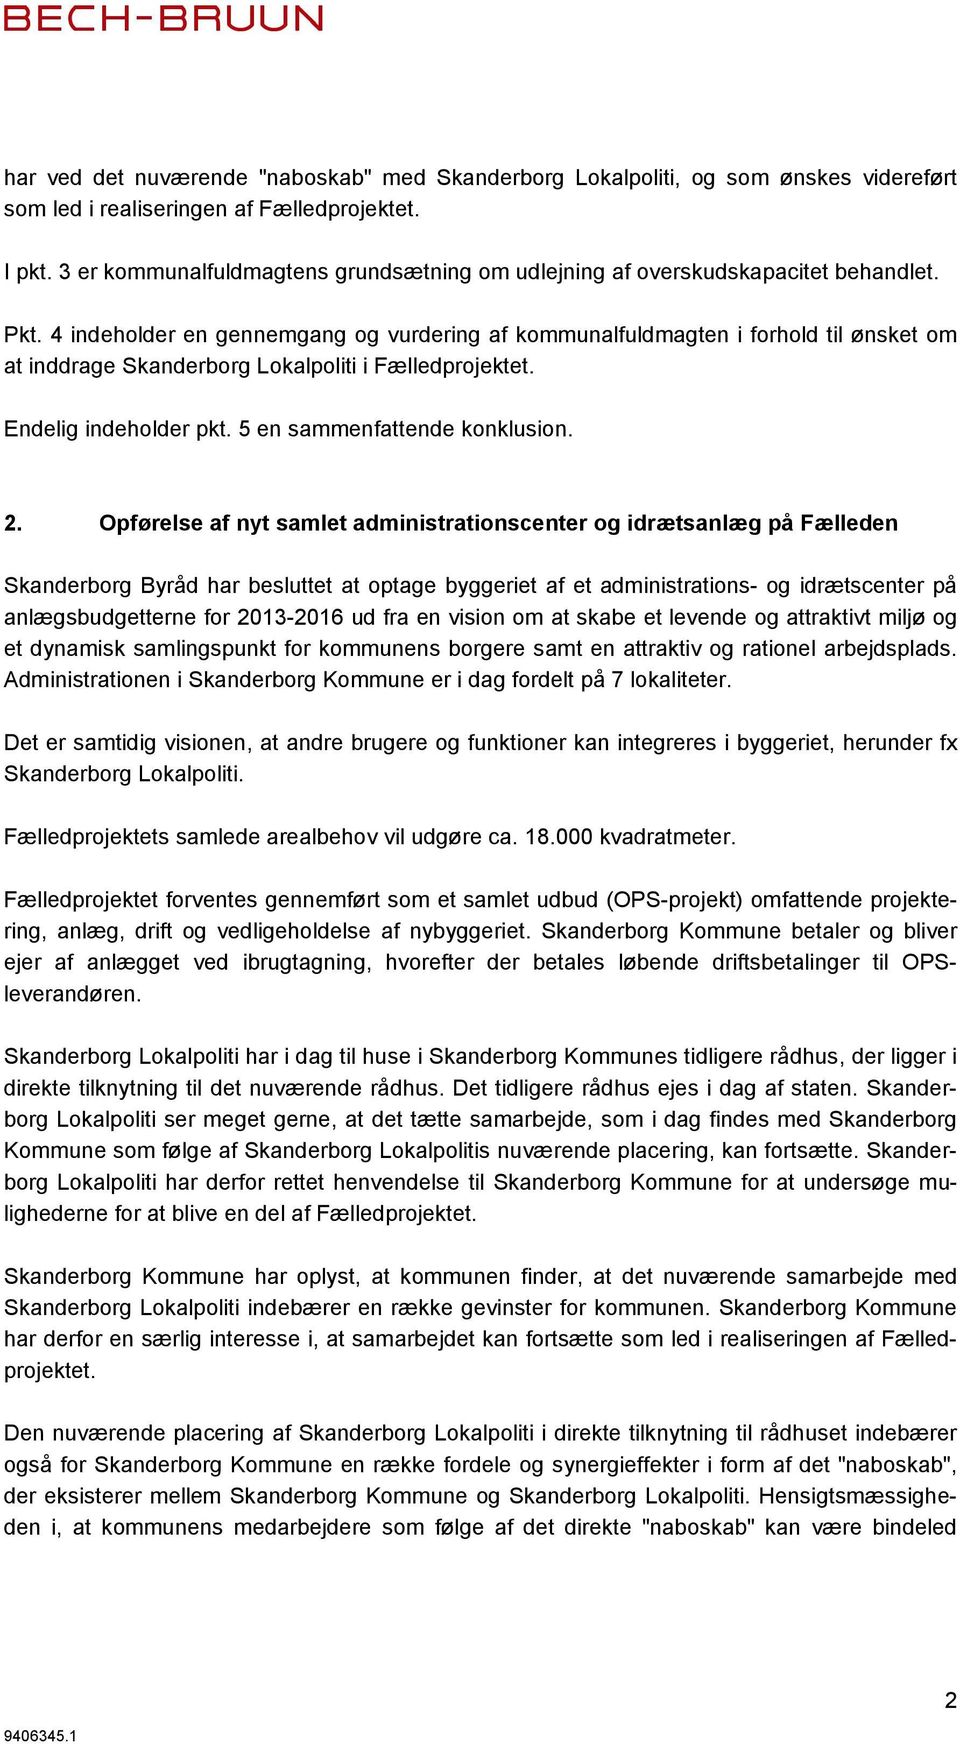 4 indeholder en gennemgang og vurdering af kommunalfuldmagten i forhold til ønsket om at inddrage Skanderborg Lokalpoliti i Fælledprojektet. Endelig indeholder pkt. 5 en sammenfattende konklusion. 2.